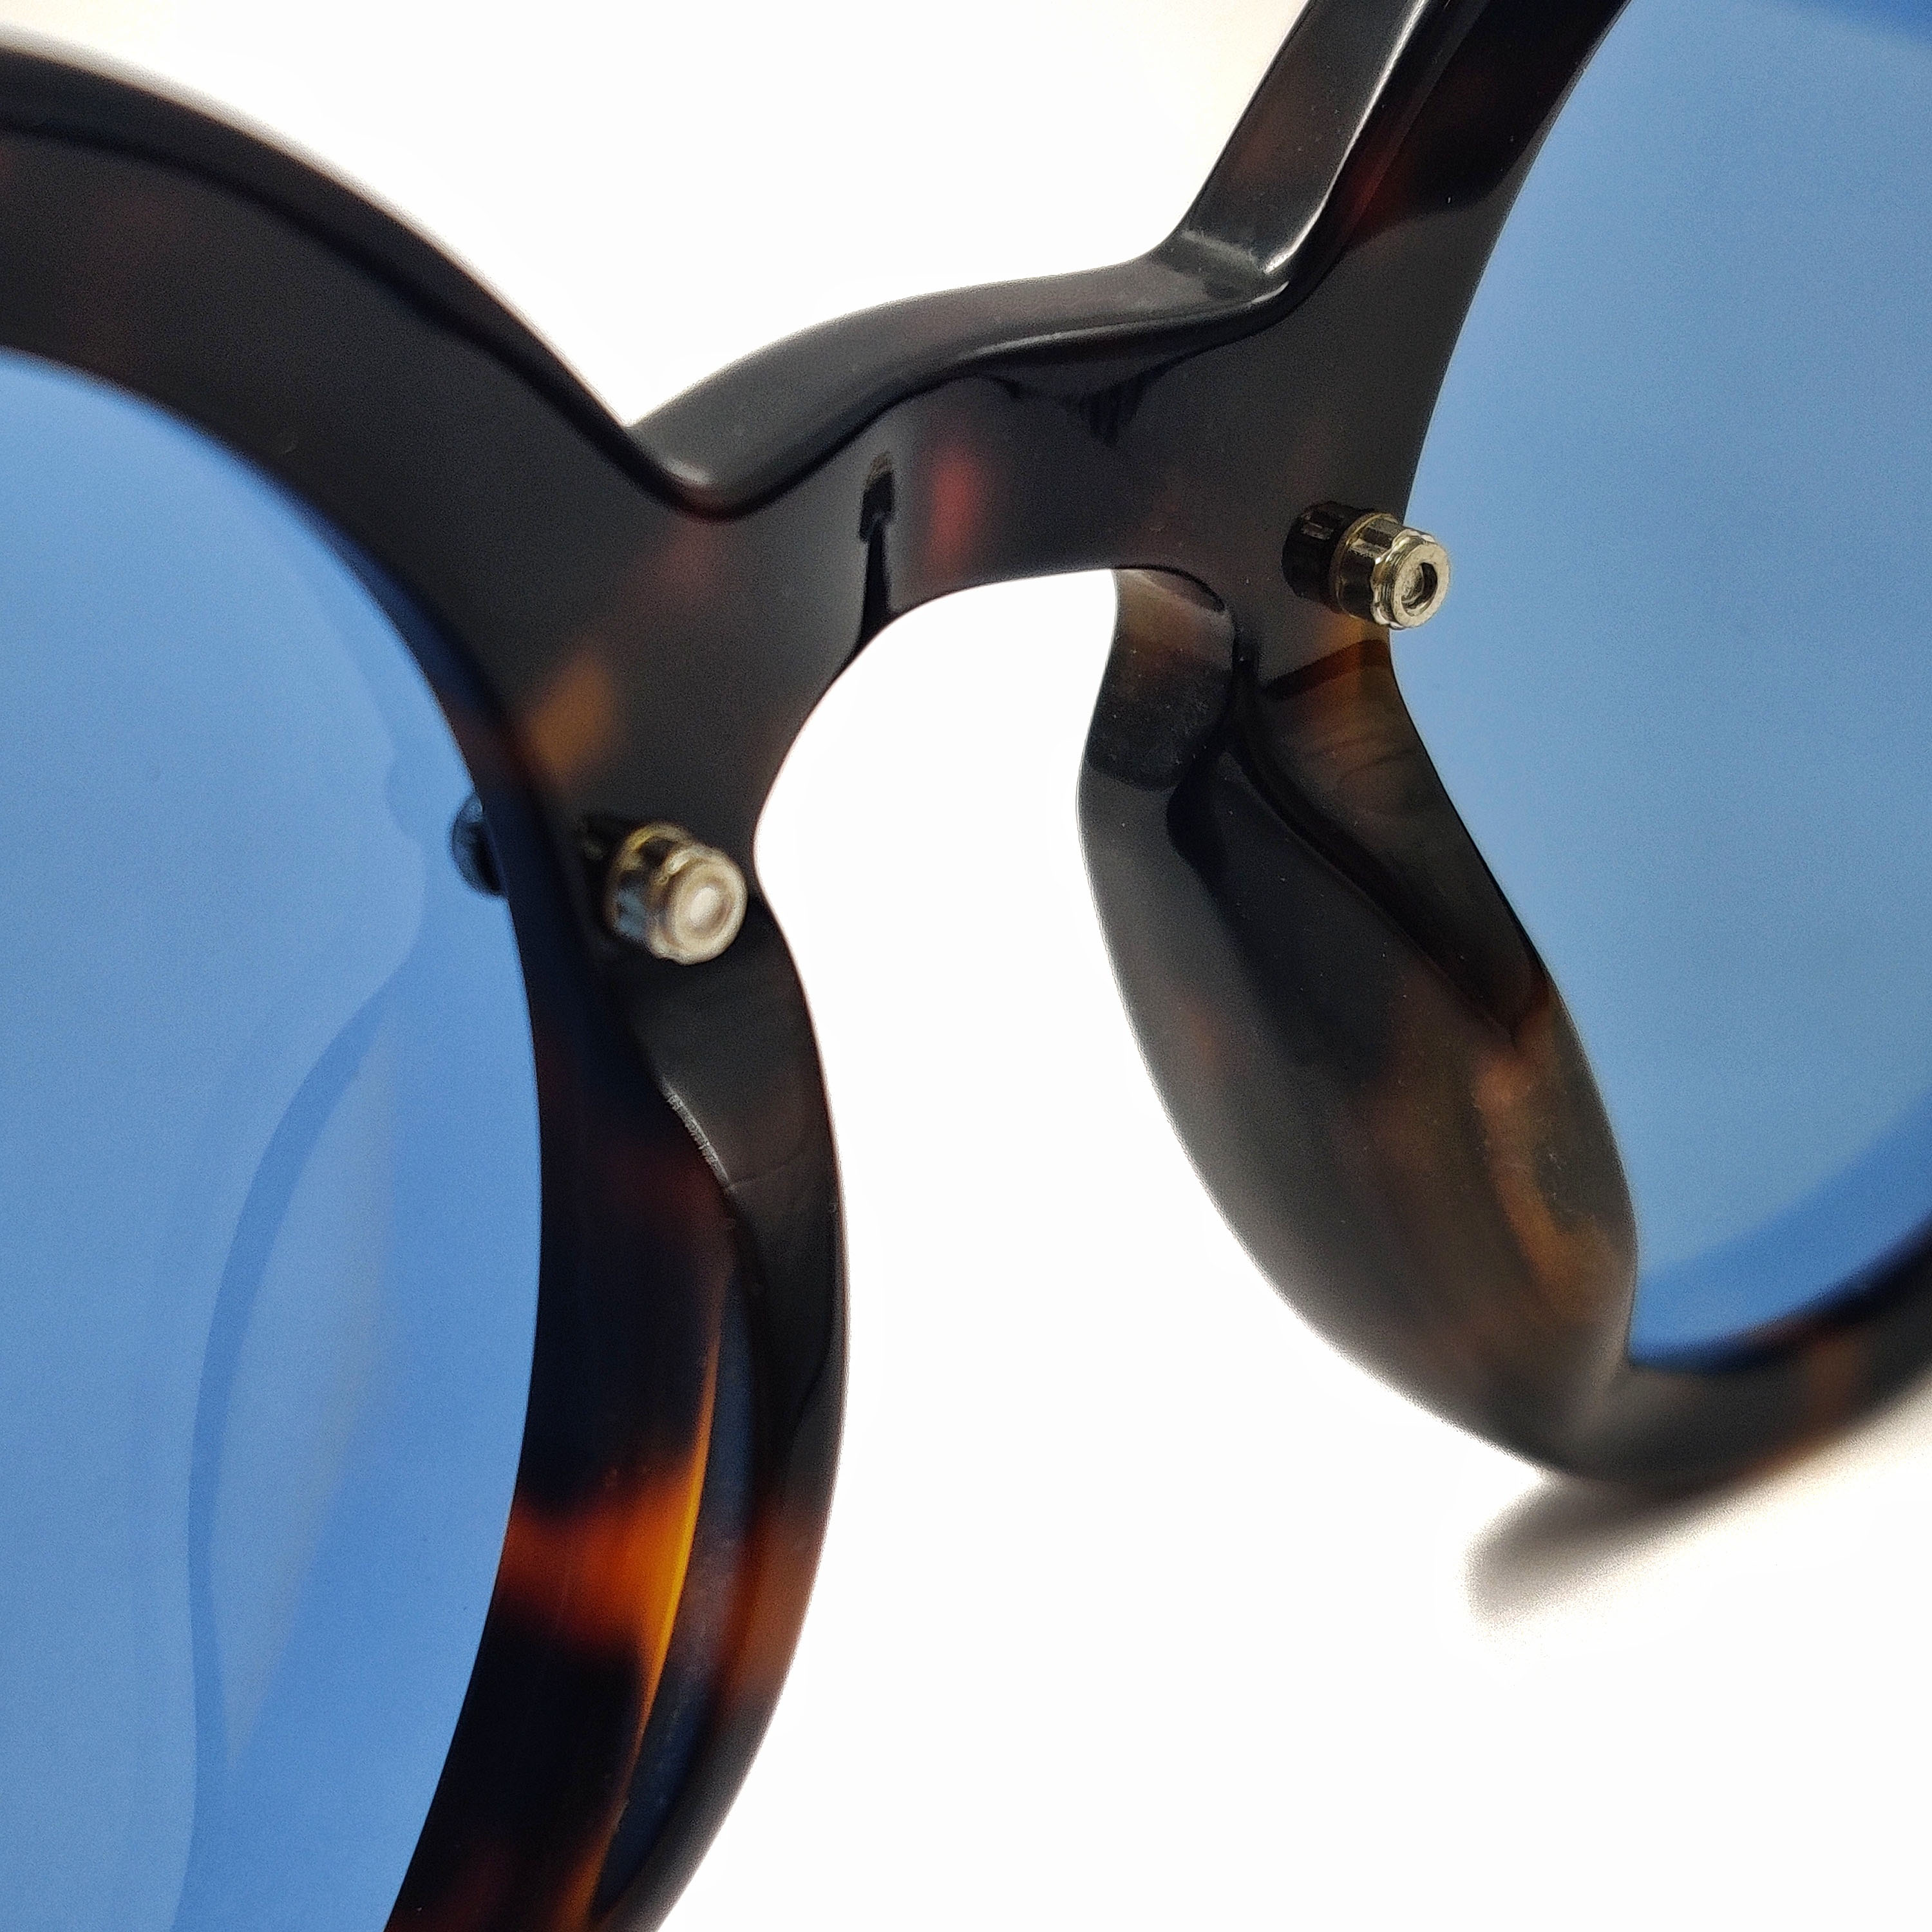 Gafas de sol de moda con montura de acetato y borde redondo Proveedores al por mayor Fabricante de gafas más grande